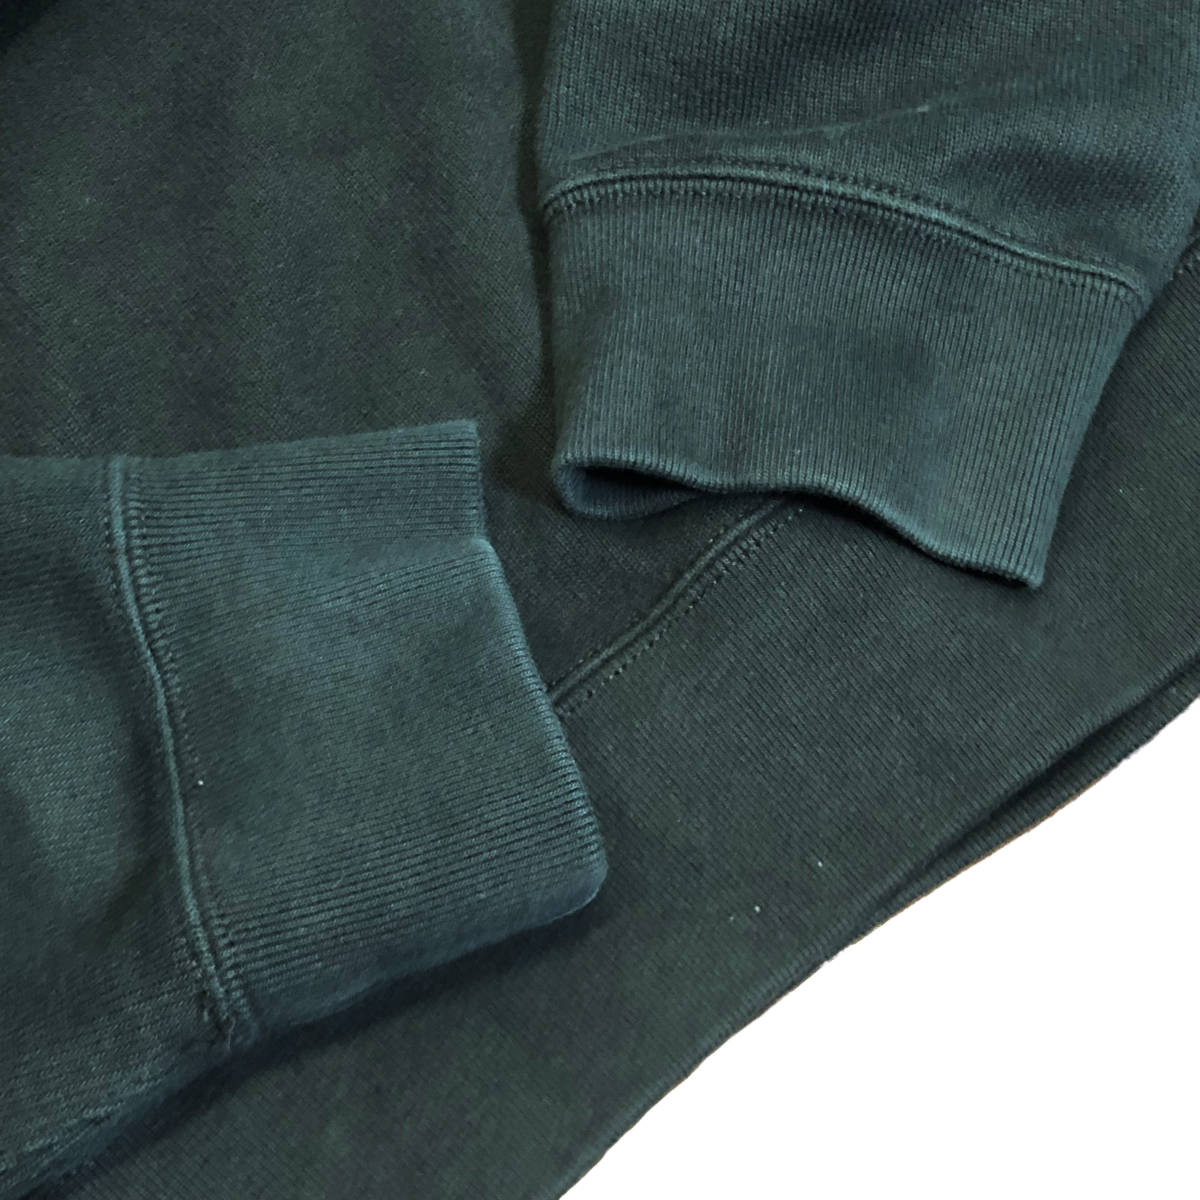 Polo by Ralph Lauren Polo bai Ralph Lauren шаль цвет тренировочный L чёрный po колено вышивка мужской A27